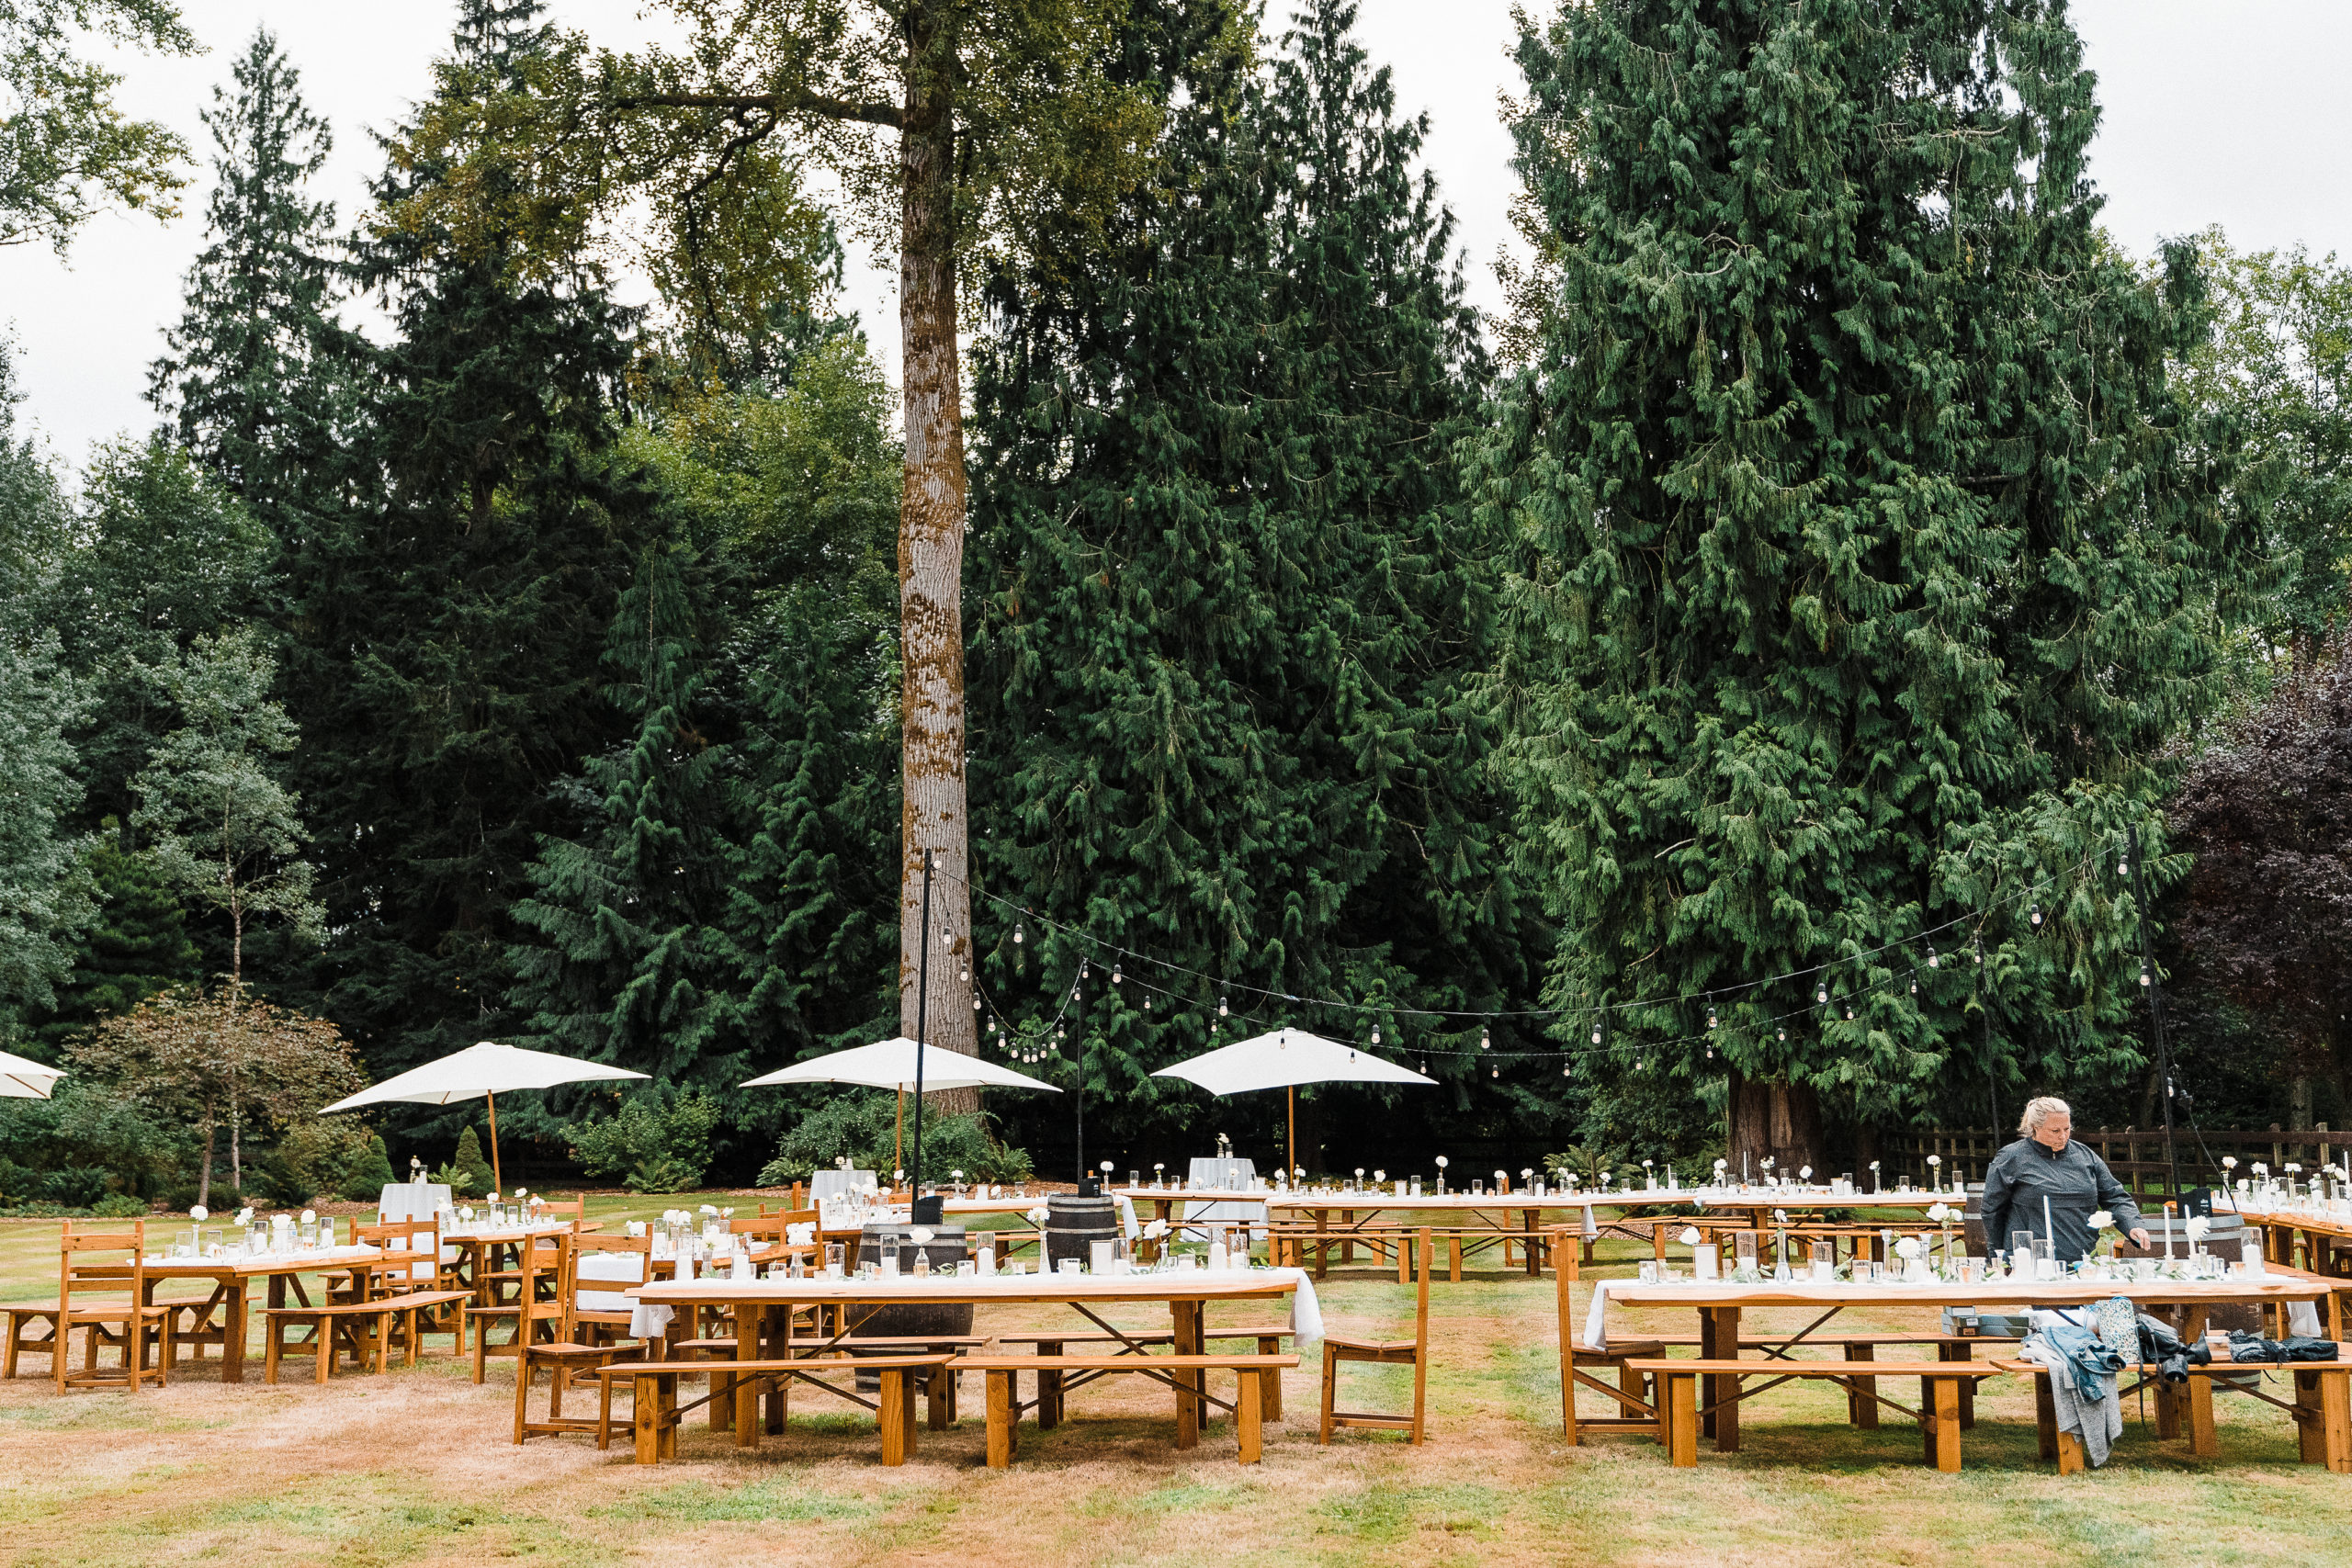 Outdoor wedding reception tables with umbrellas